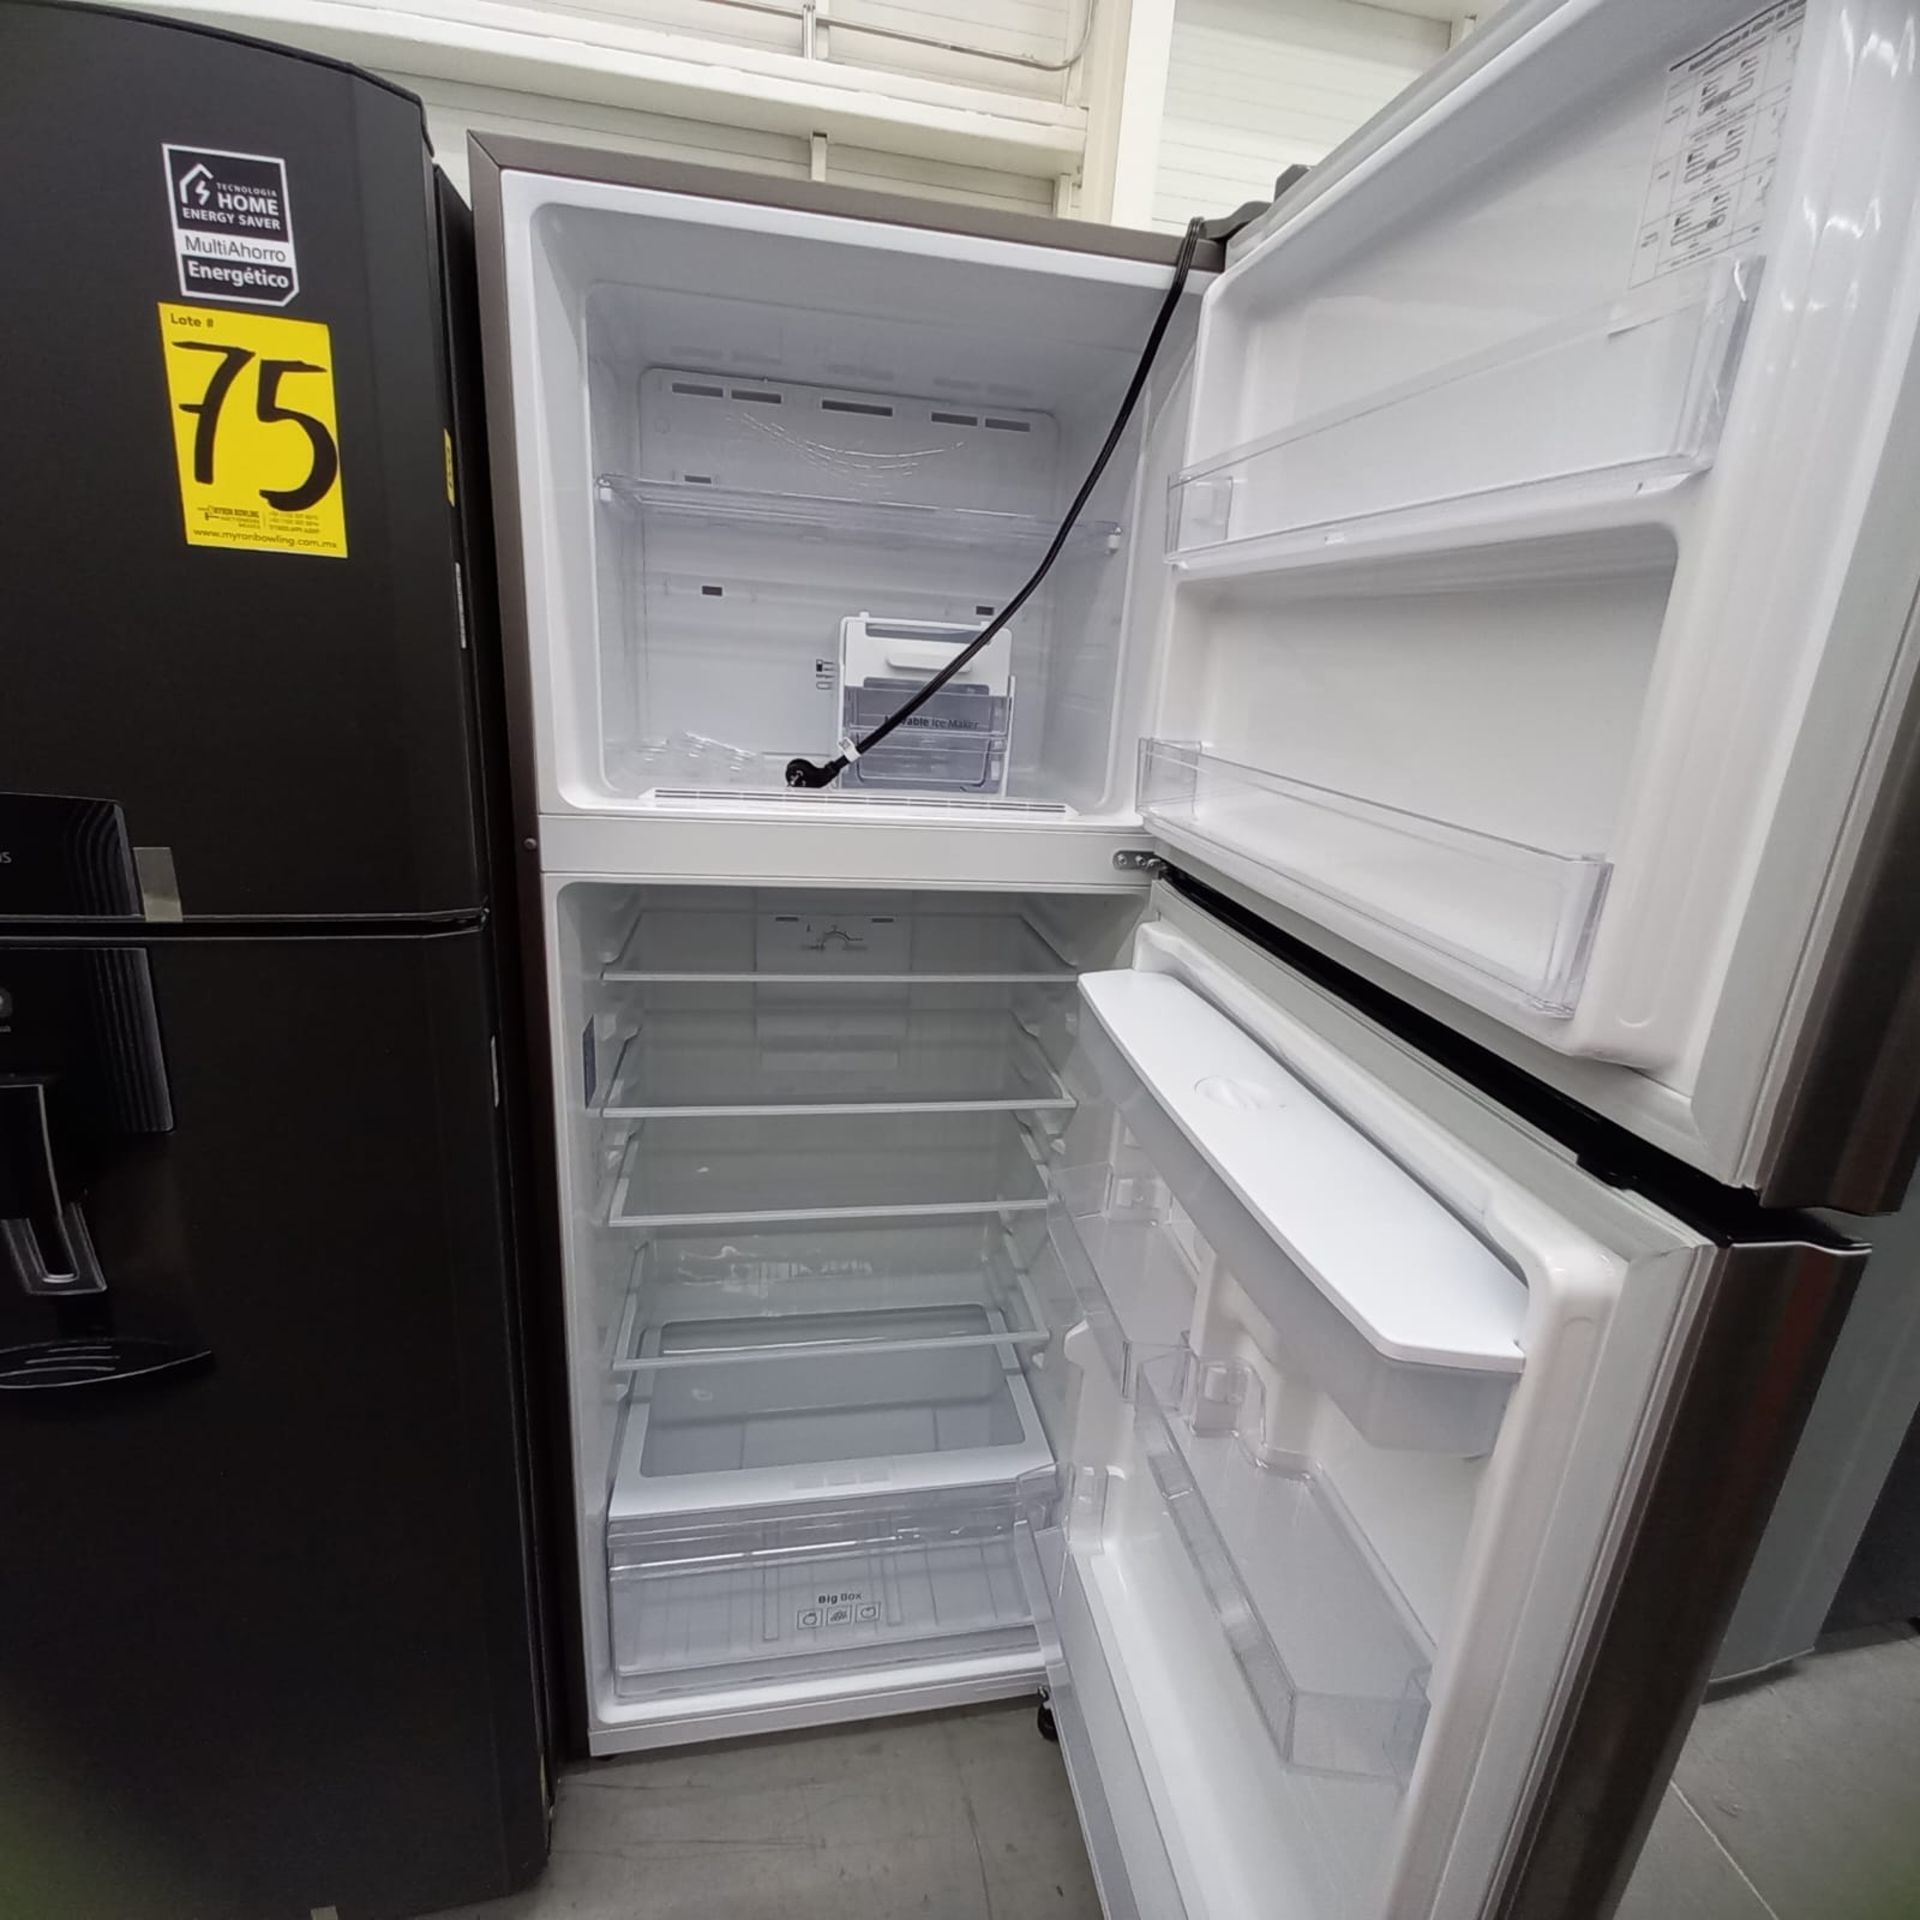 Lote De 2 Refrigeradores: 1 Refrigerador Marca Mabe, 1 Refrigerador Marca Winia, Distintos Modelos - Image 21 of 23